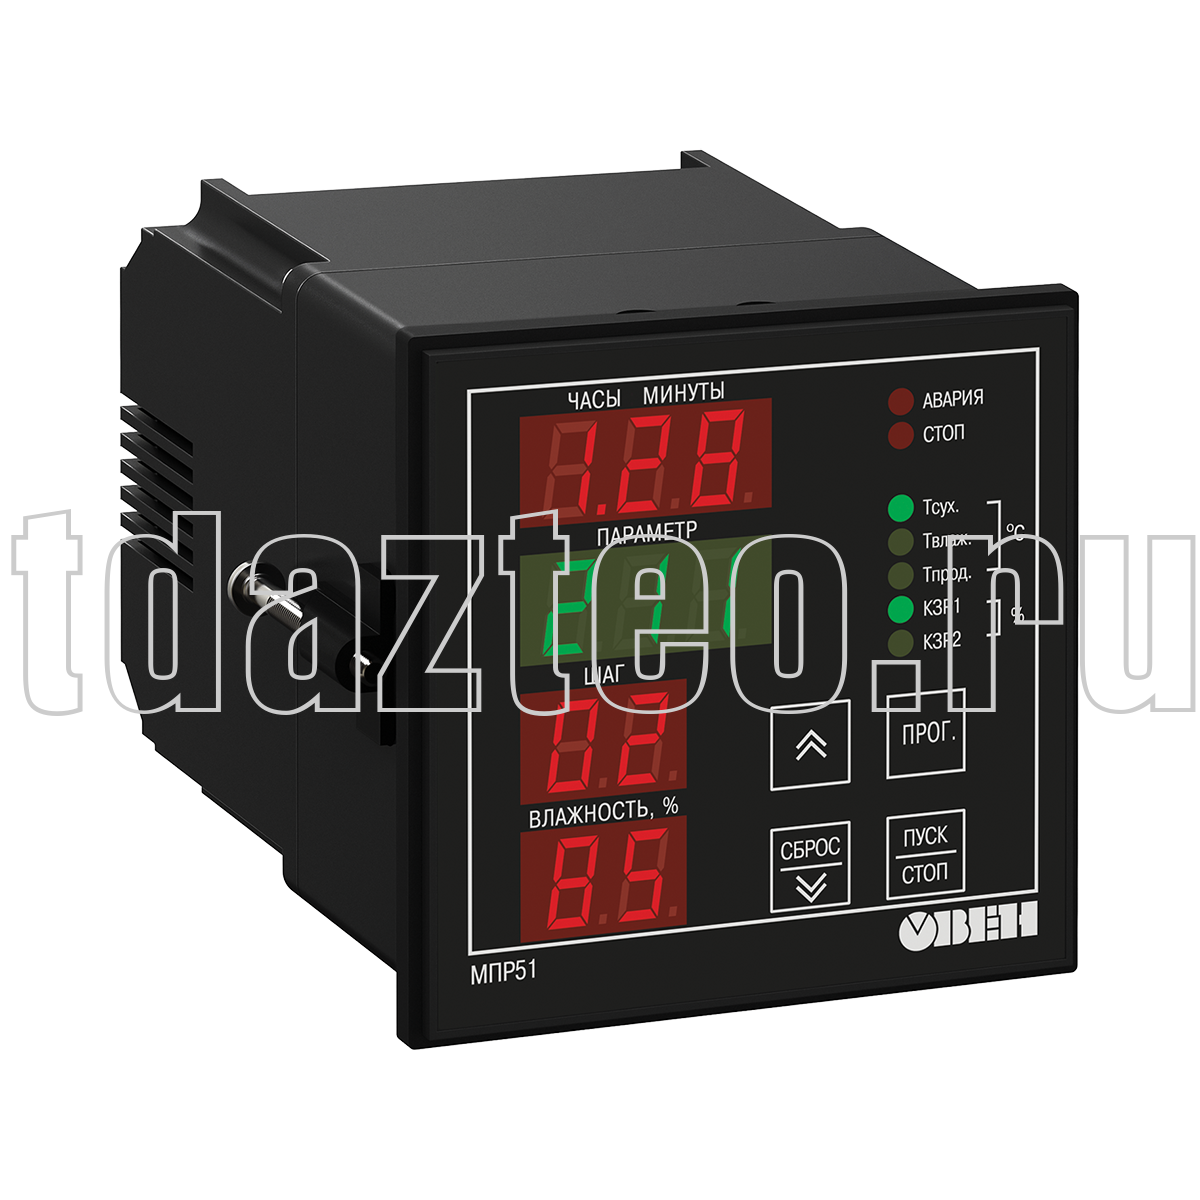 МПР51-Щ4.03.RS регулятор температуры и влажности, программируемый по времени ОВЕН.